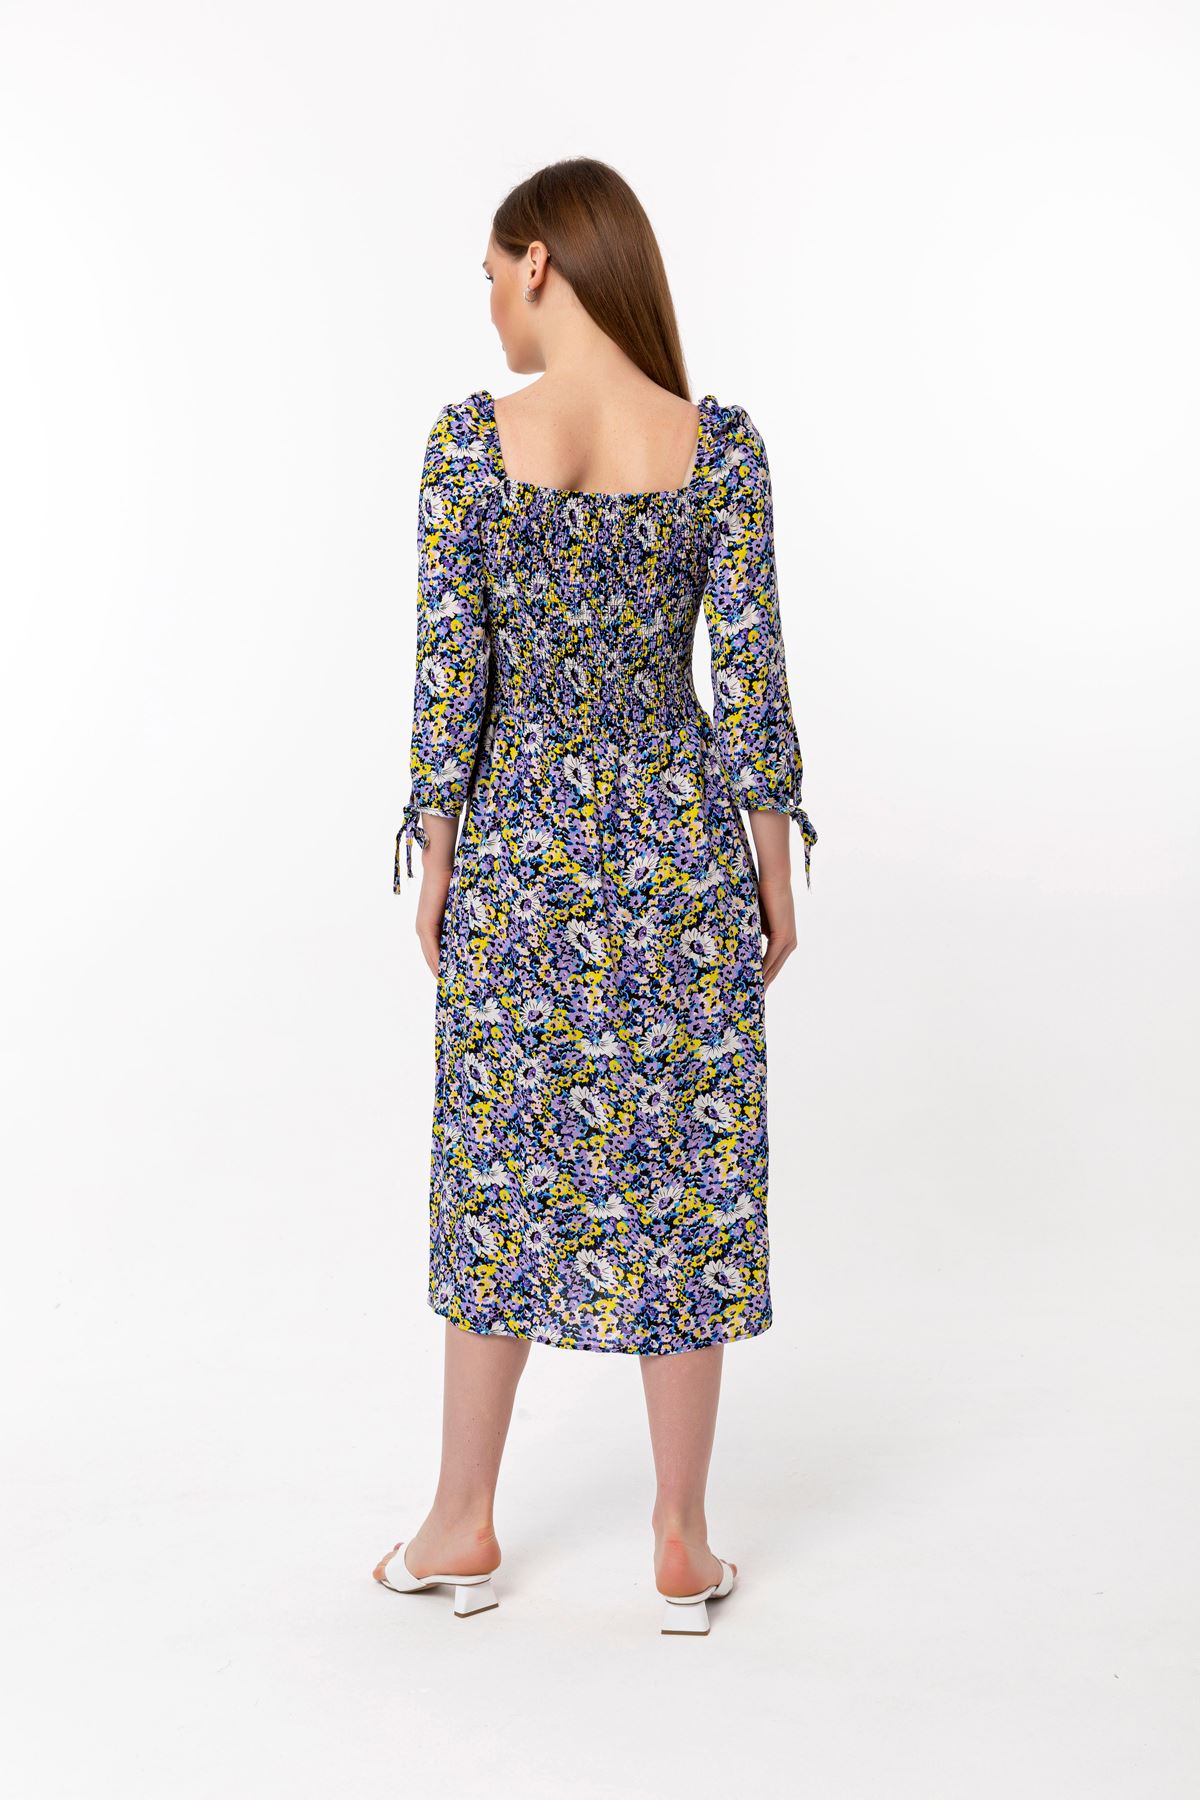 Viscose Fabric Square Neckline Midi Floral Print Women Dress - Lilac